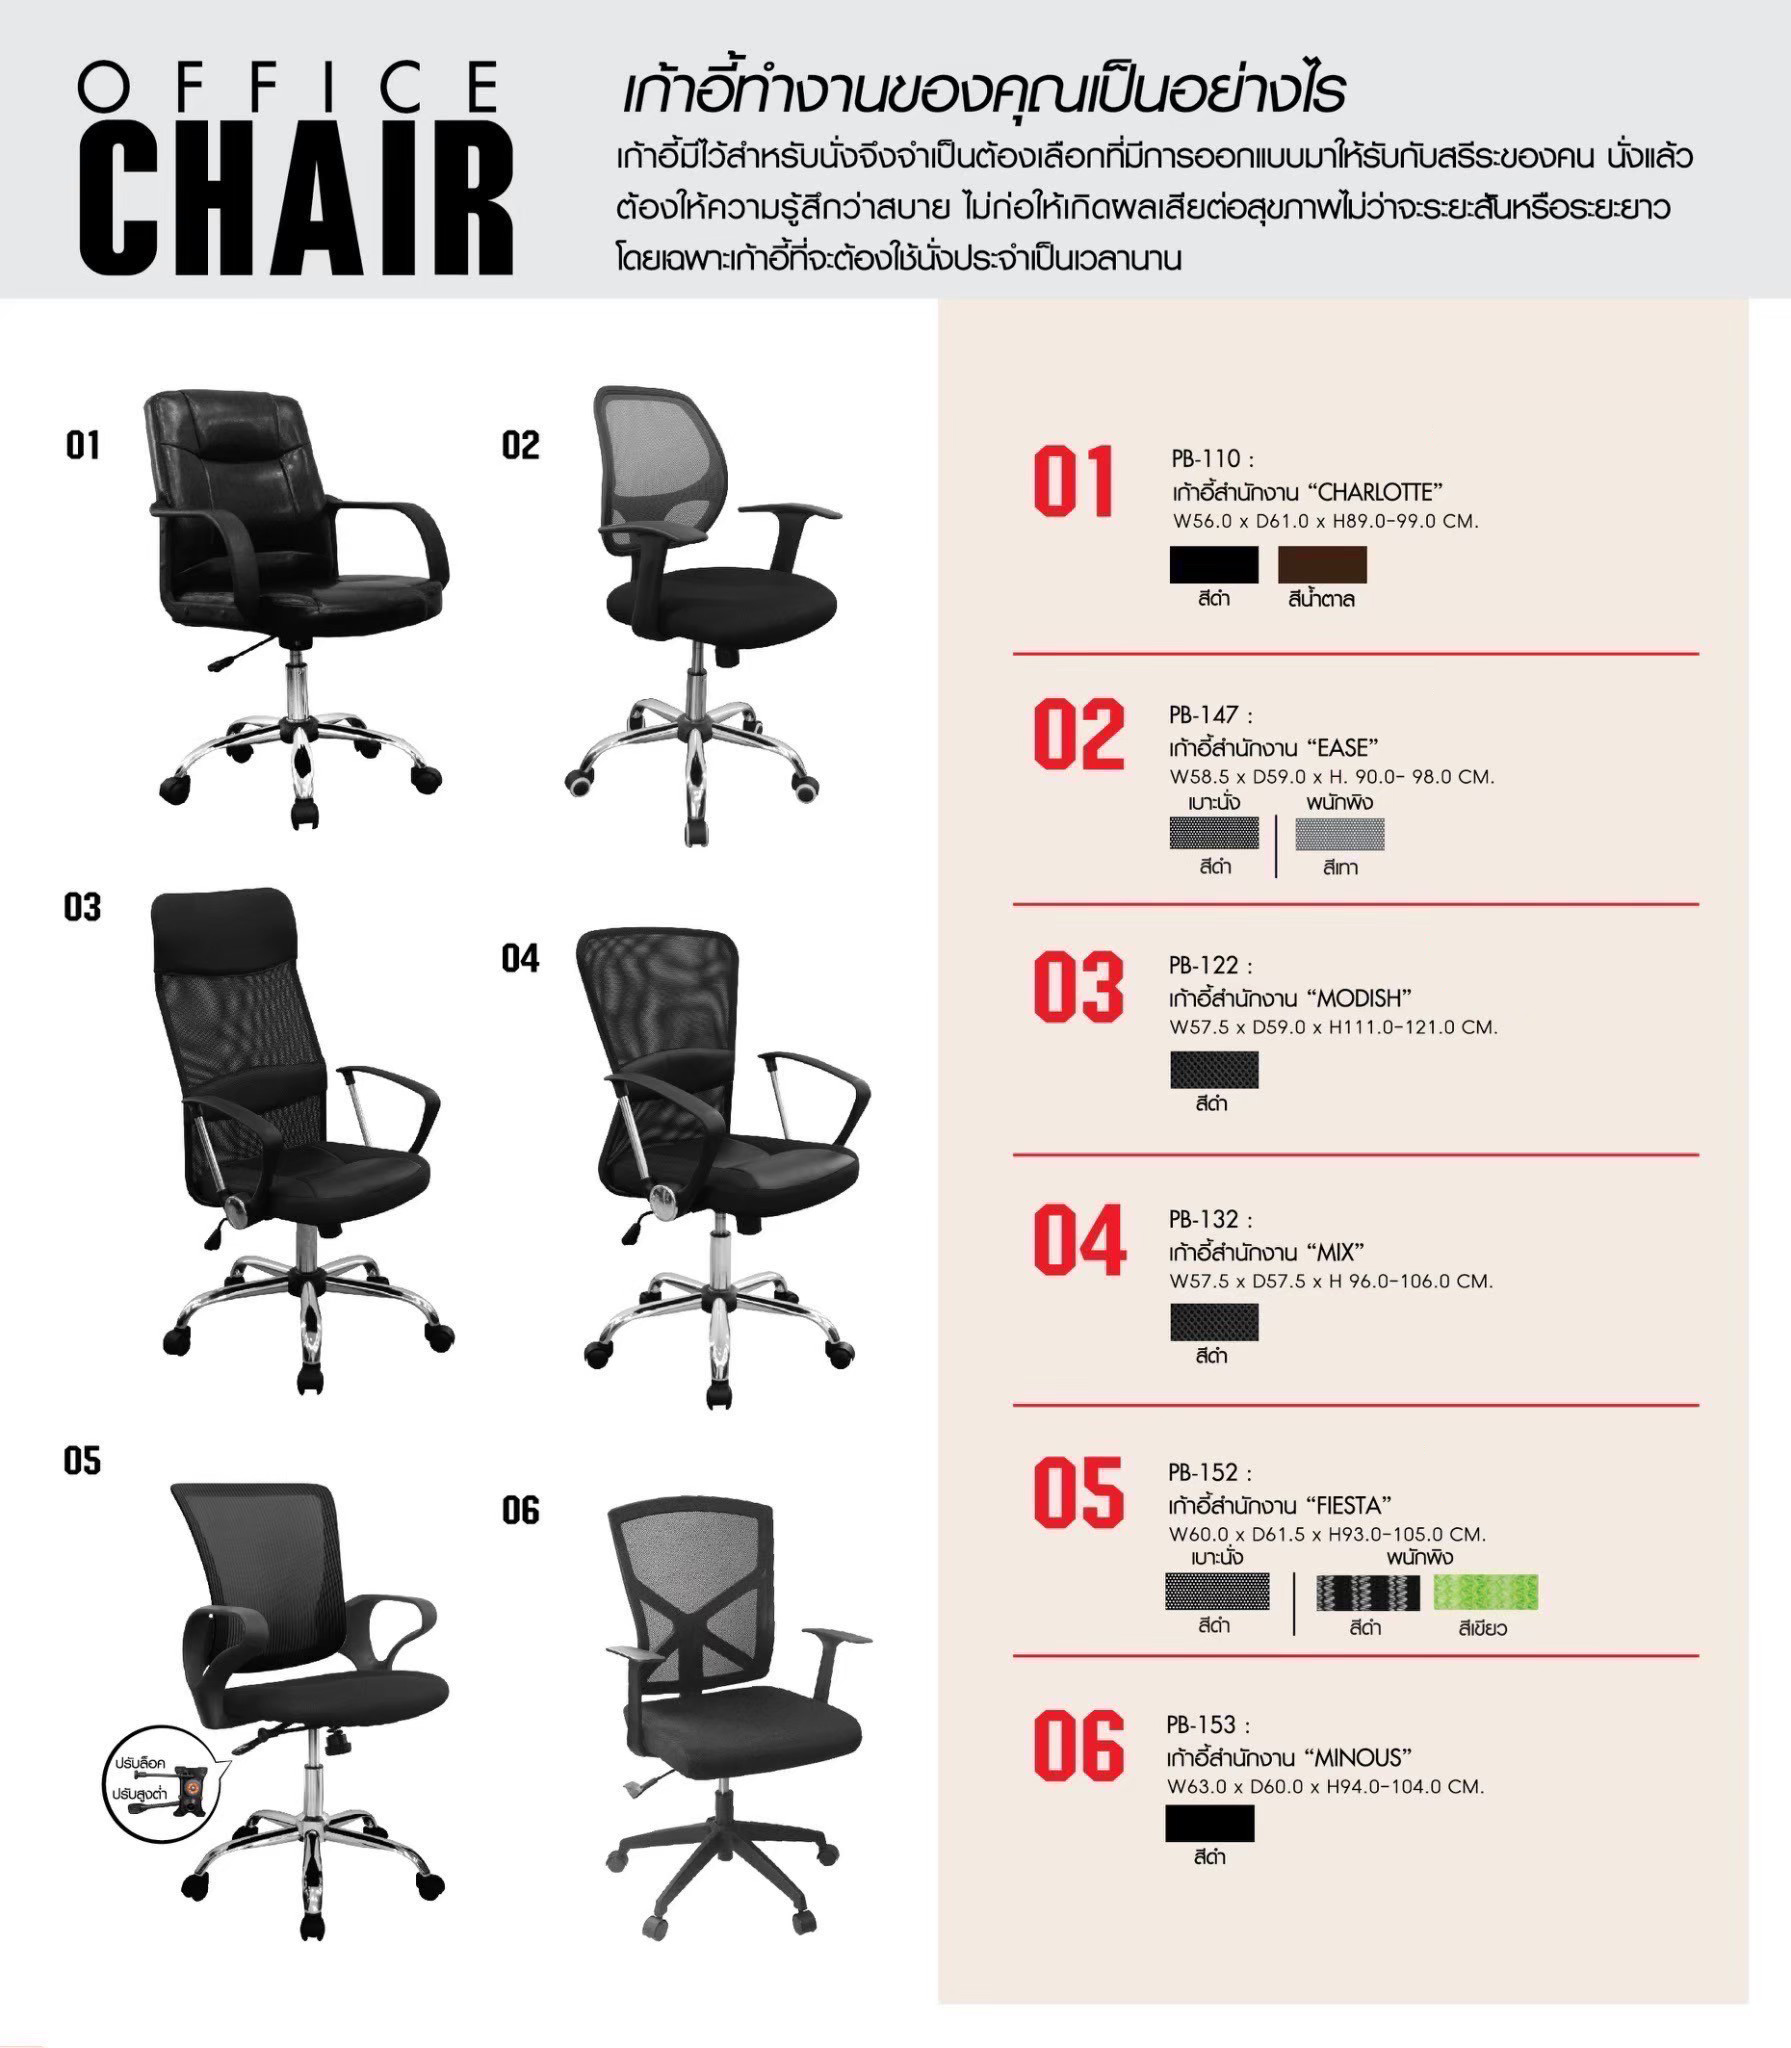 56000::PB-132 (MIX)::เก้าอี้สำนักงาน MIX ขนาด575X575X960-1060มม. เก้าอี้สำนักงาน PRELUDE พรีลูด เก้าอี้สำนักงาน